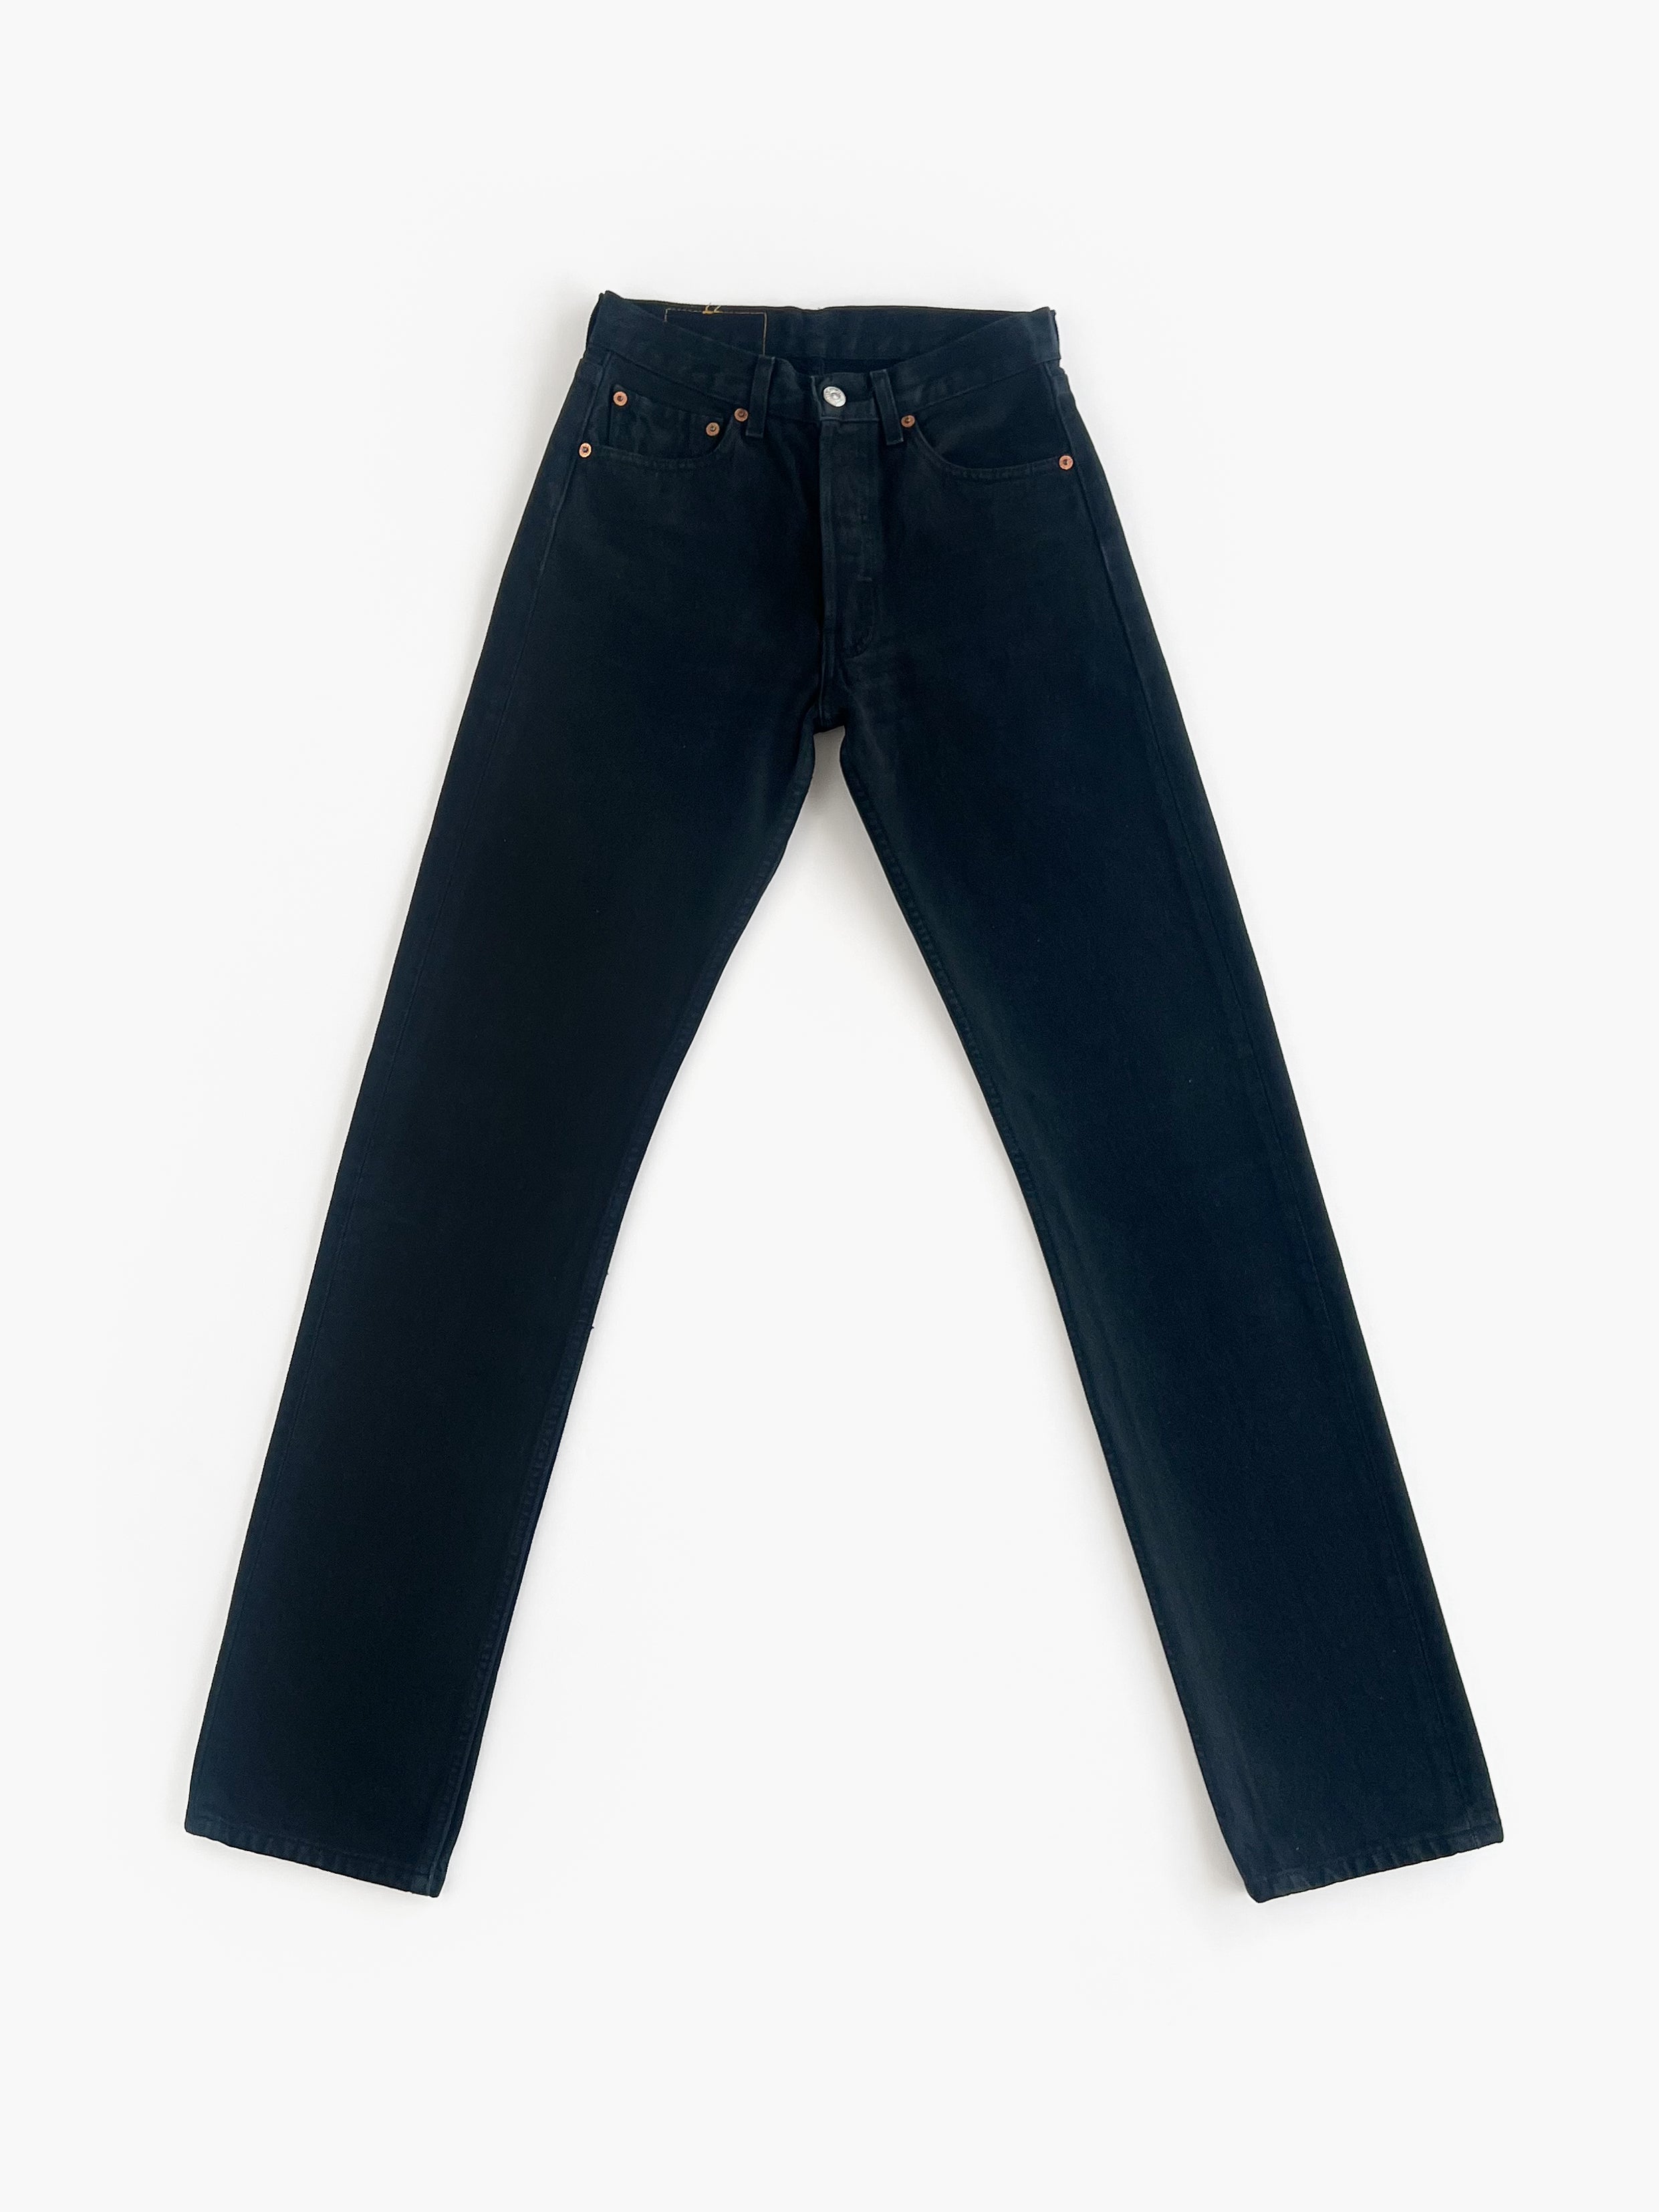 Vintage Levi’s 501 Jeans / W27 L34